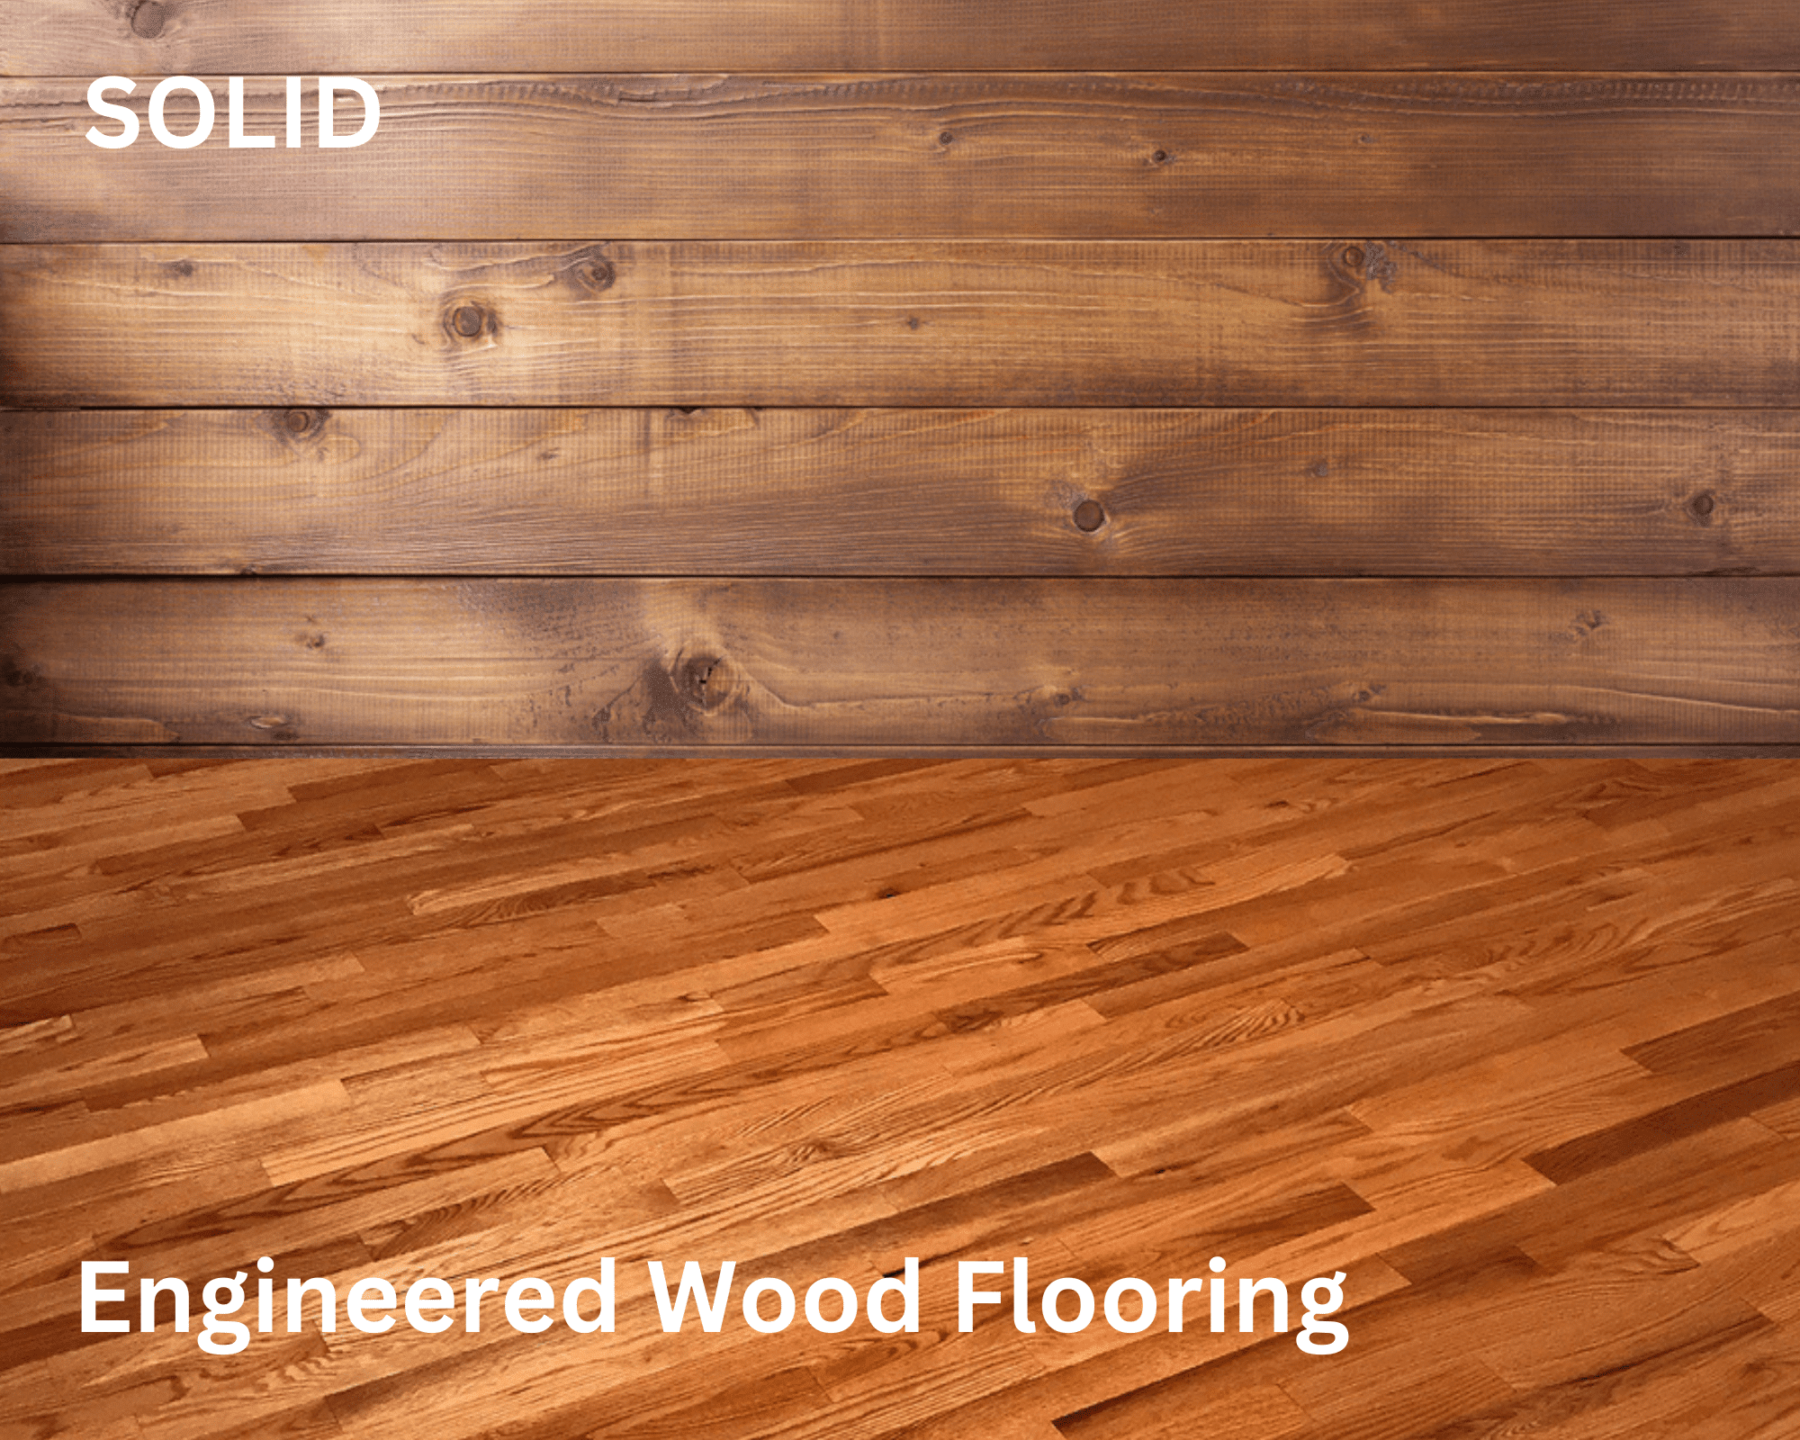 Solid vs. Engineered Wood Flooring: